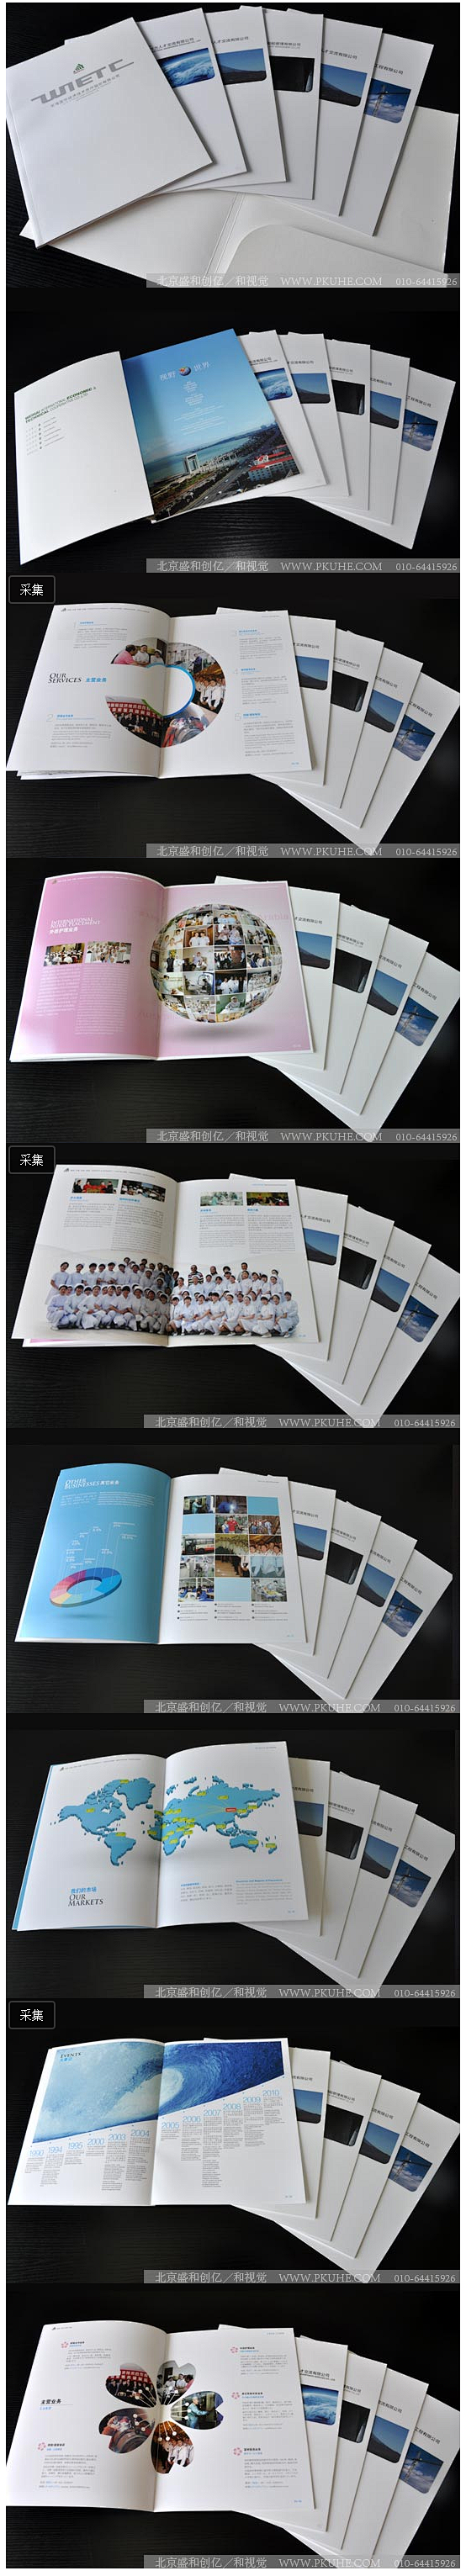 山东威海国际系列形象宣传册设计画册设计,...